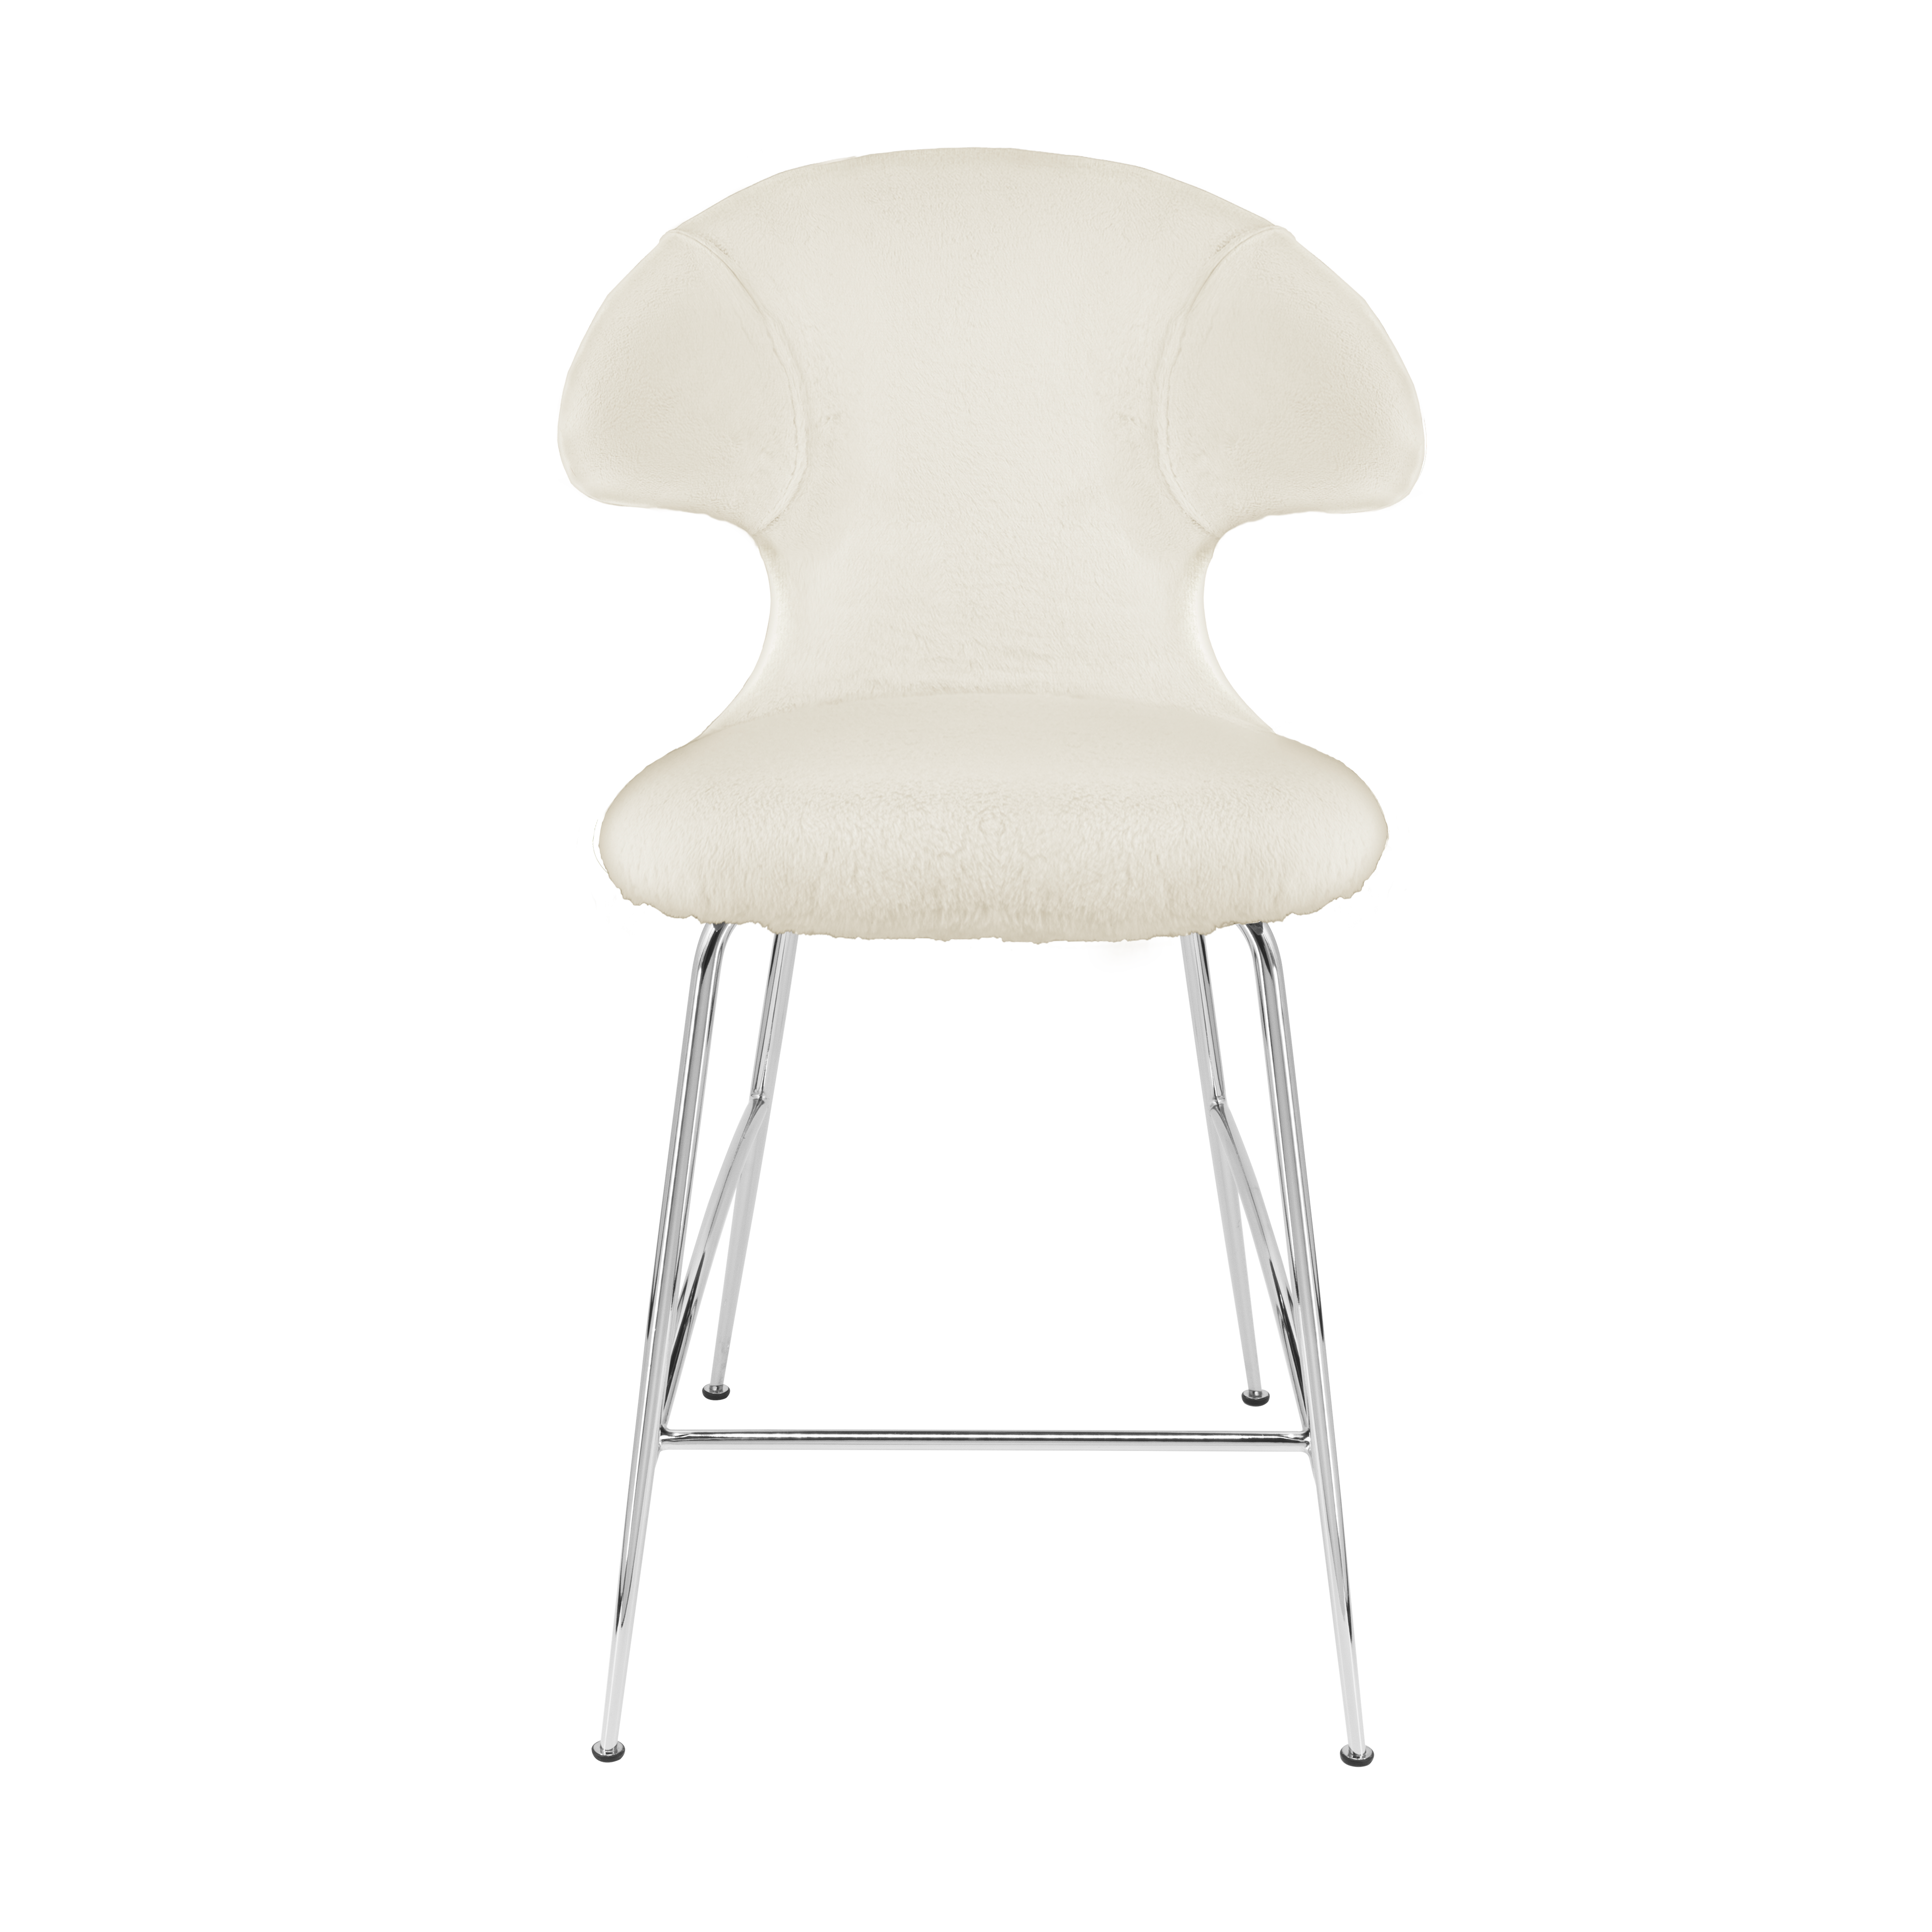 Time Flies Counter Stuhl in Teddy White präsentiert im Onlineshop von KAQTU Design AG. Barstuhl mit Armlehne ist von Umage